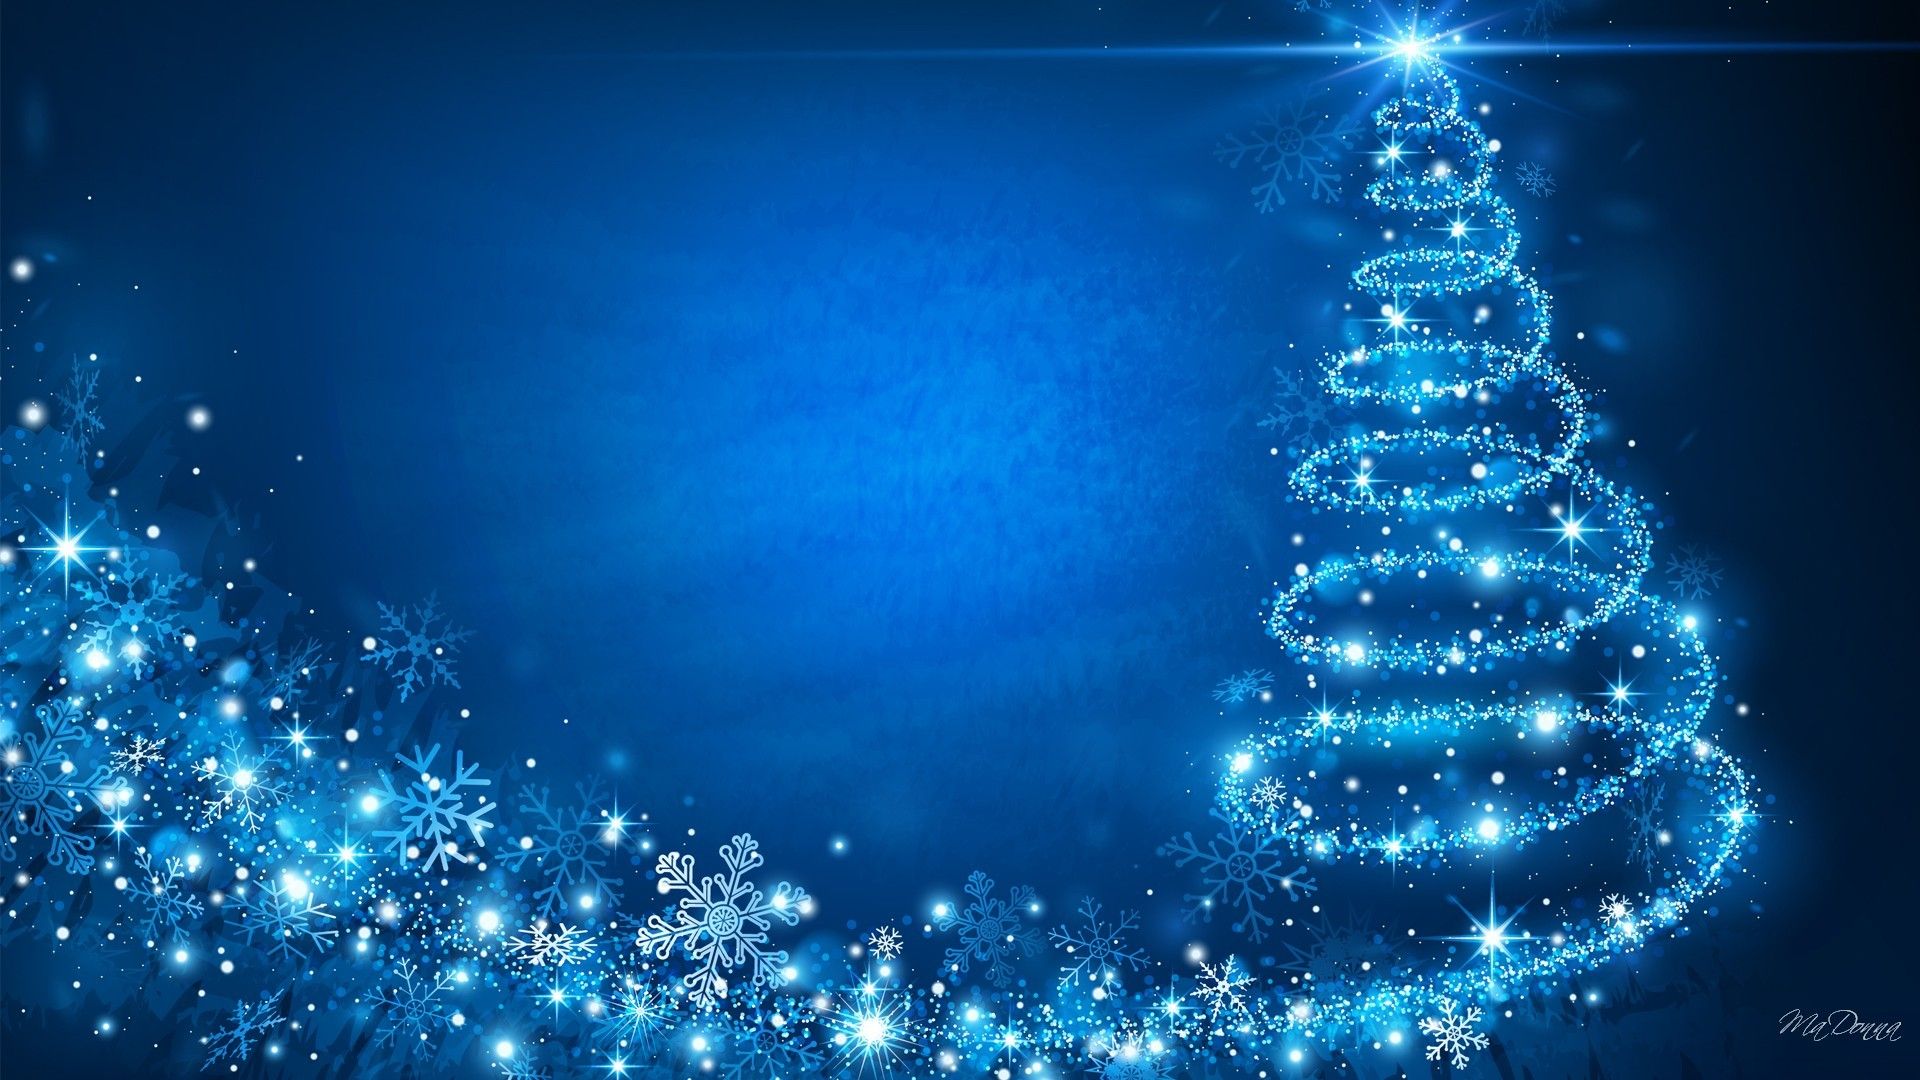 72+ Fondos de Navidad azules. Wallpaper HD 1080p navideños. de Navidad,  Navideños - Todo fondos